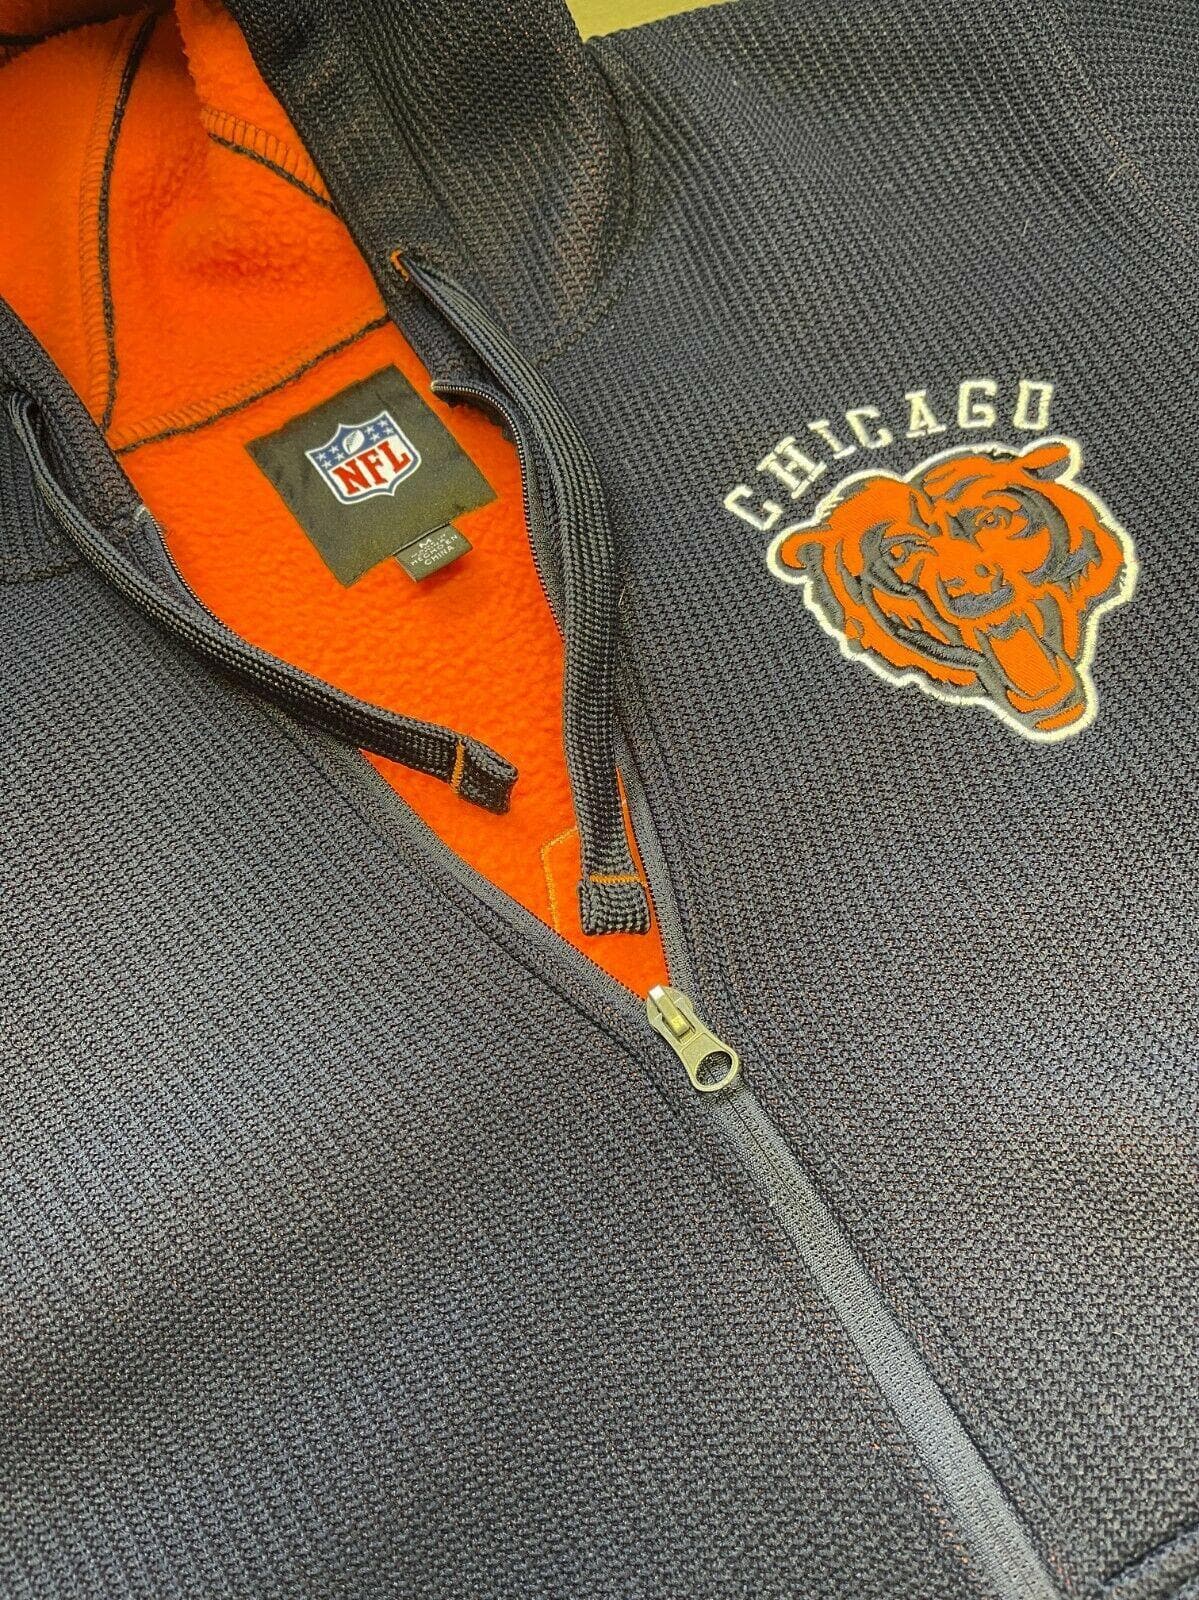 NFL Chicago Bears GIII Heavy Knit Jacket Coat Men's Medium